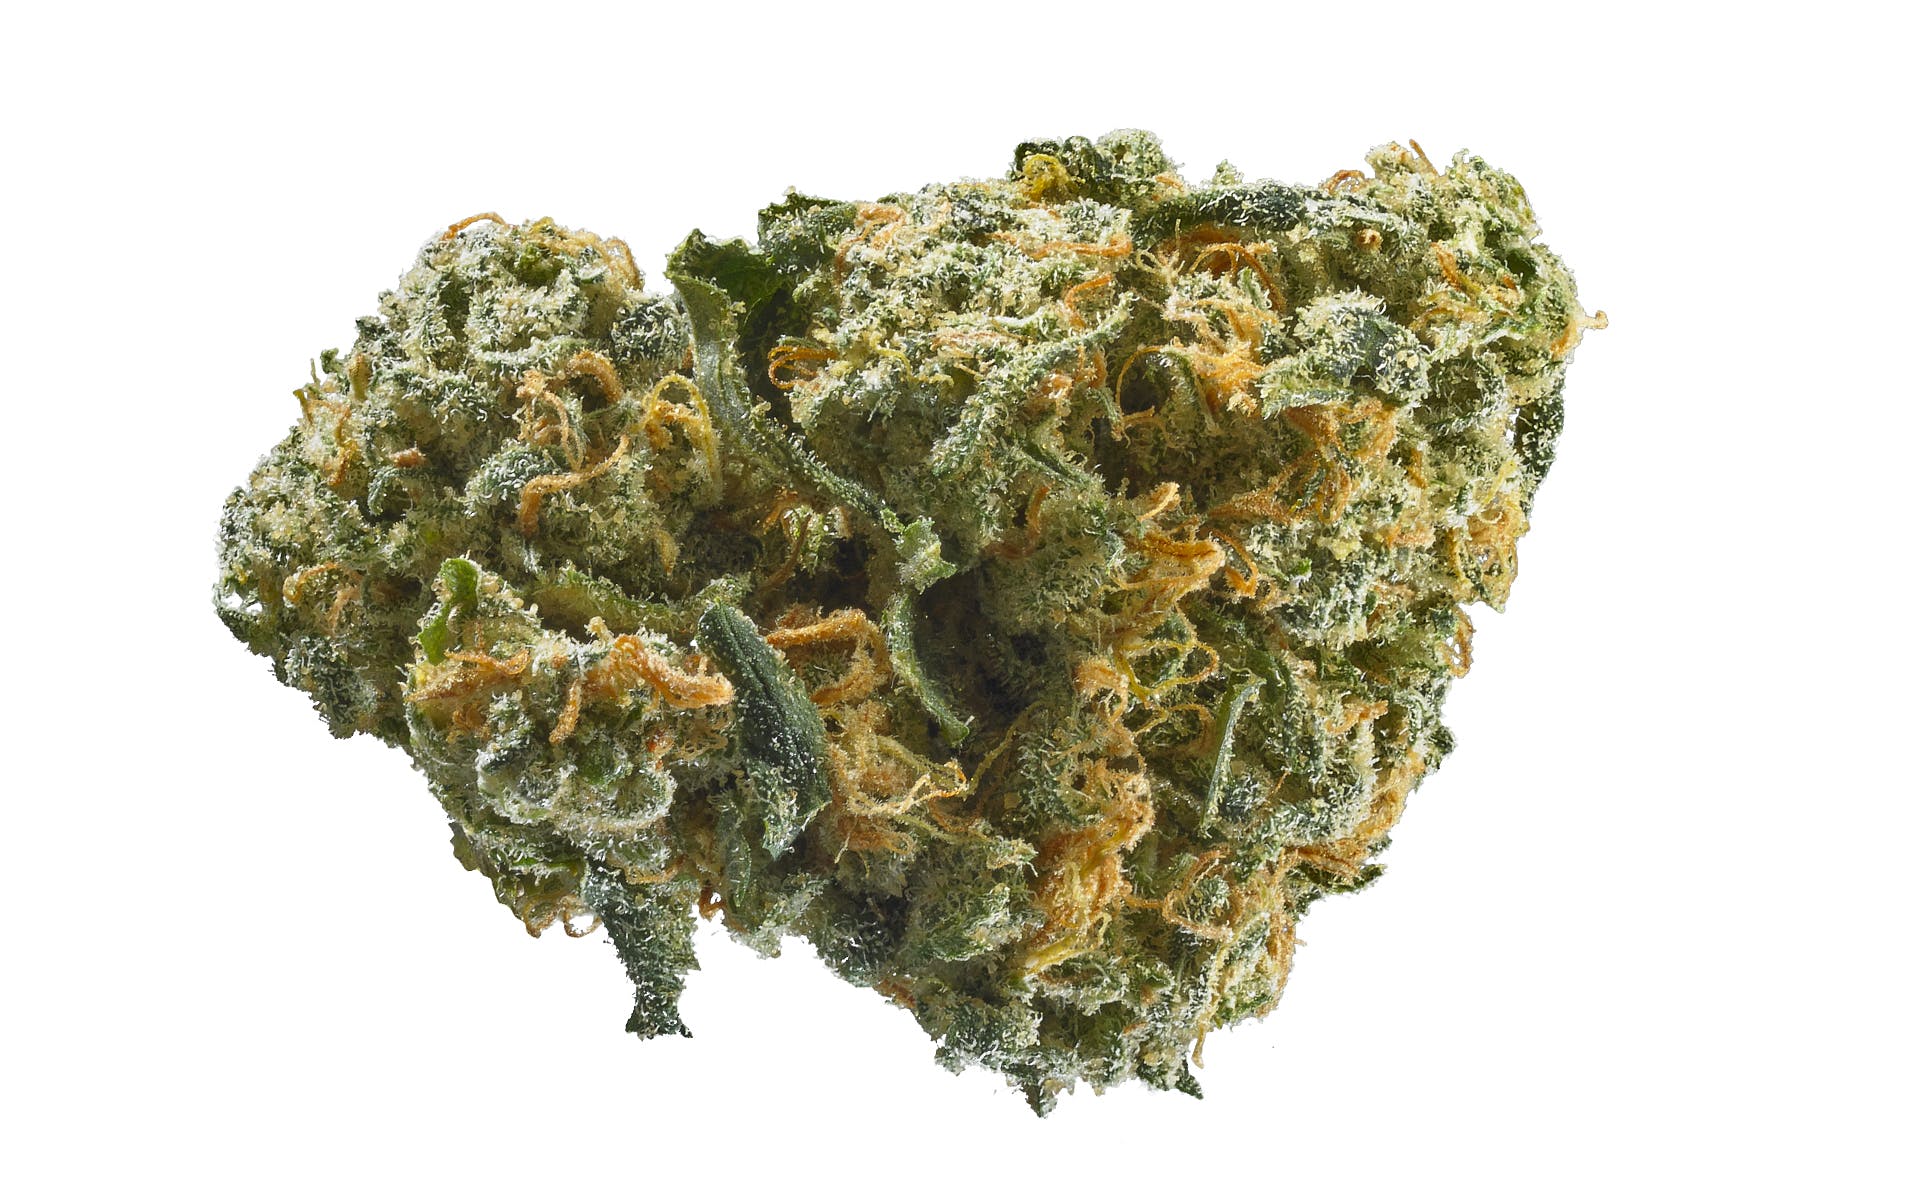 marijuana-dispensaries-green-gears-20-cap-in-los-angeles-topshelf-alpha-og-2oz270-qp530